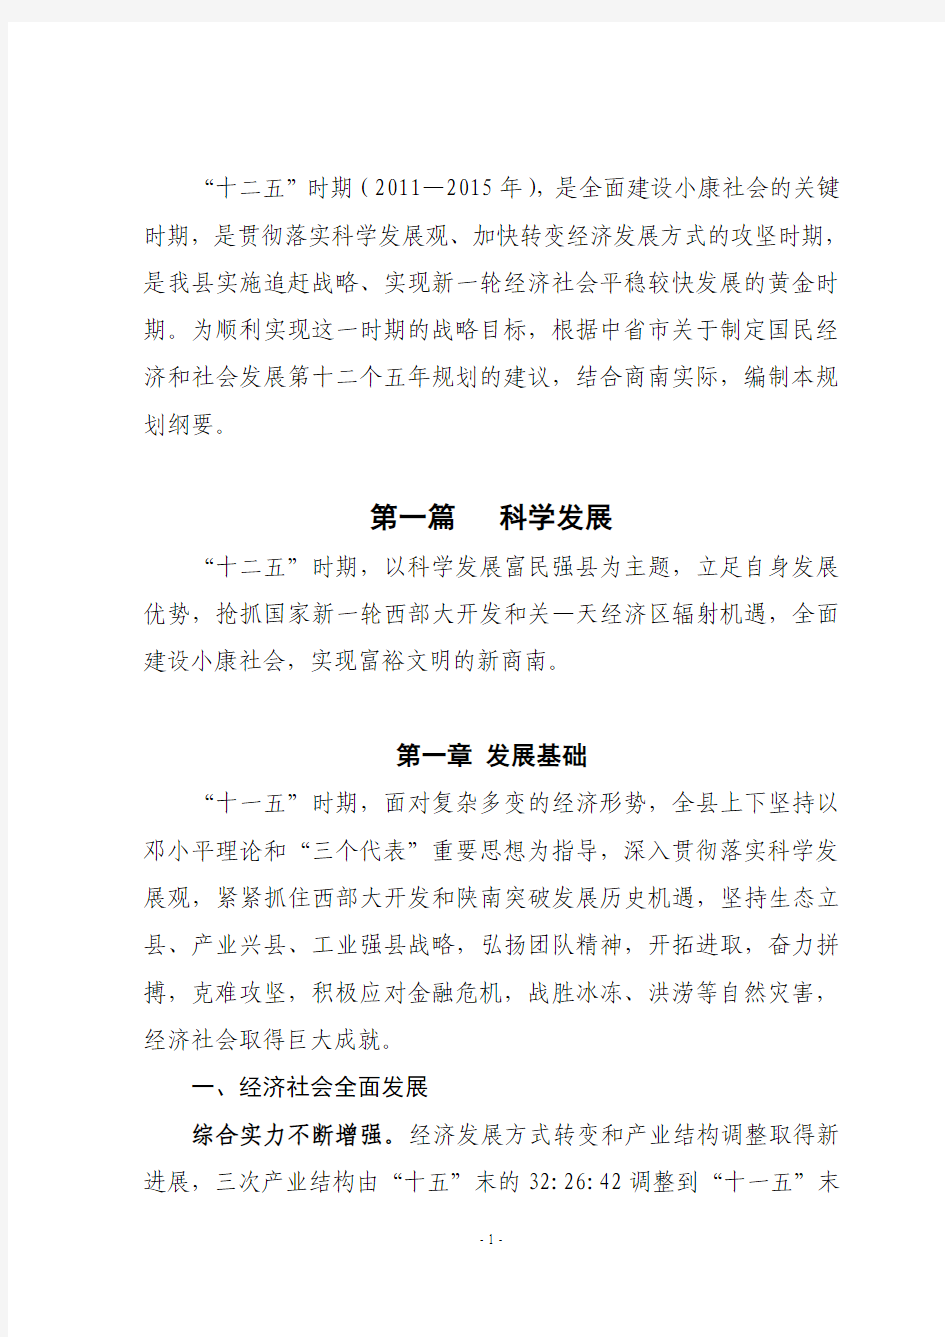 商南县国民经济和社会发展第十二个五年规划纲要